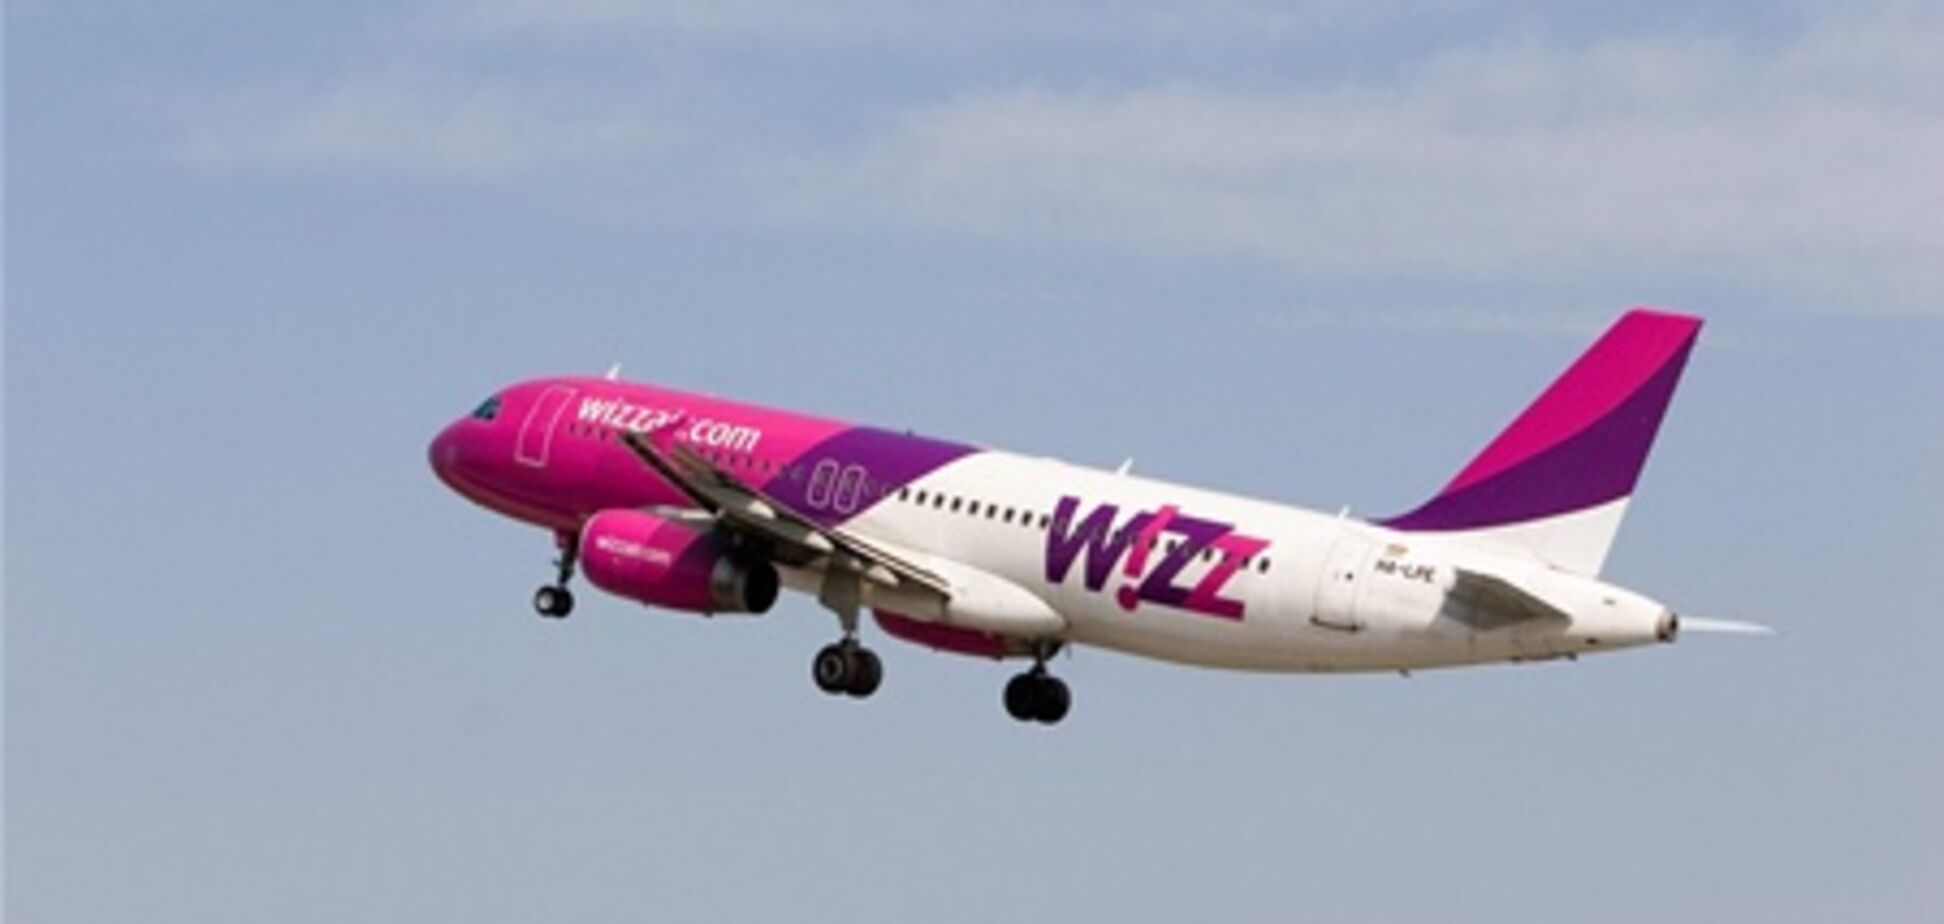 Услуга WIZZ Flex: бесплатно переоформить авиабилет